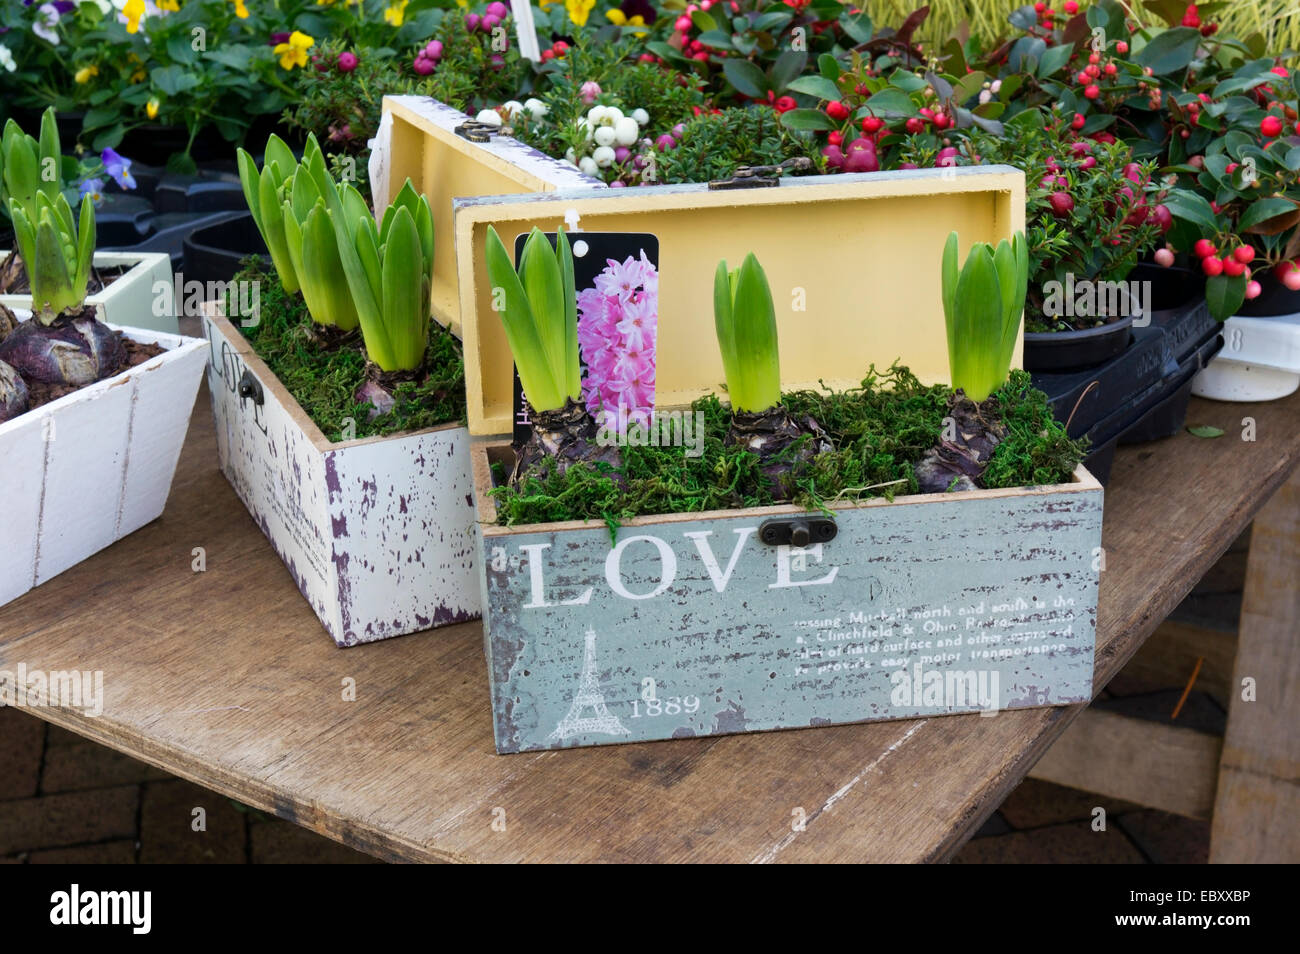 Hyazinthen auf einem Marktstand Blumen in Präsentationsboxen anzeigen oder geben als Geschenk verpackt. Stockfoto